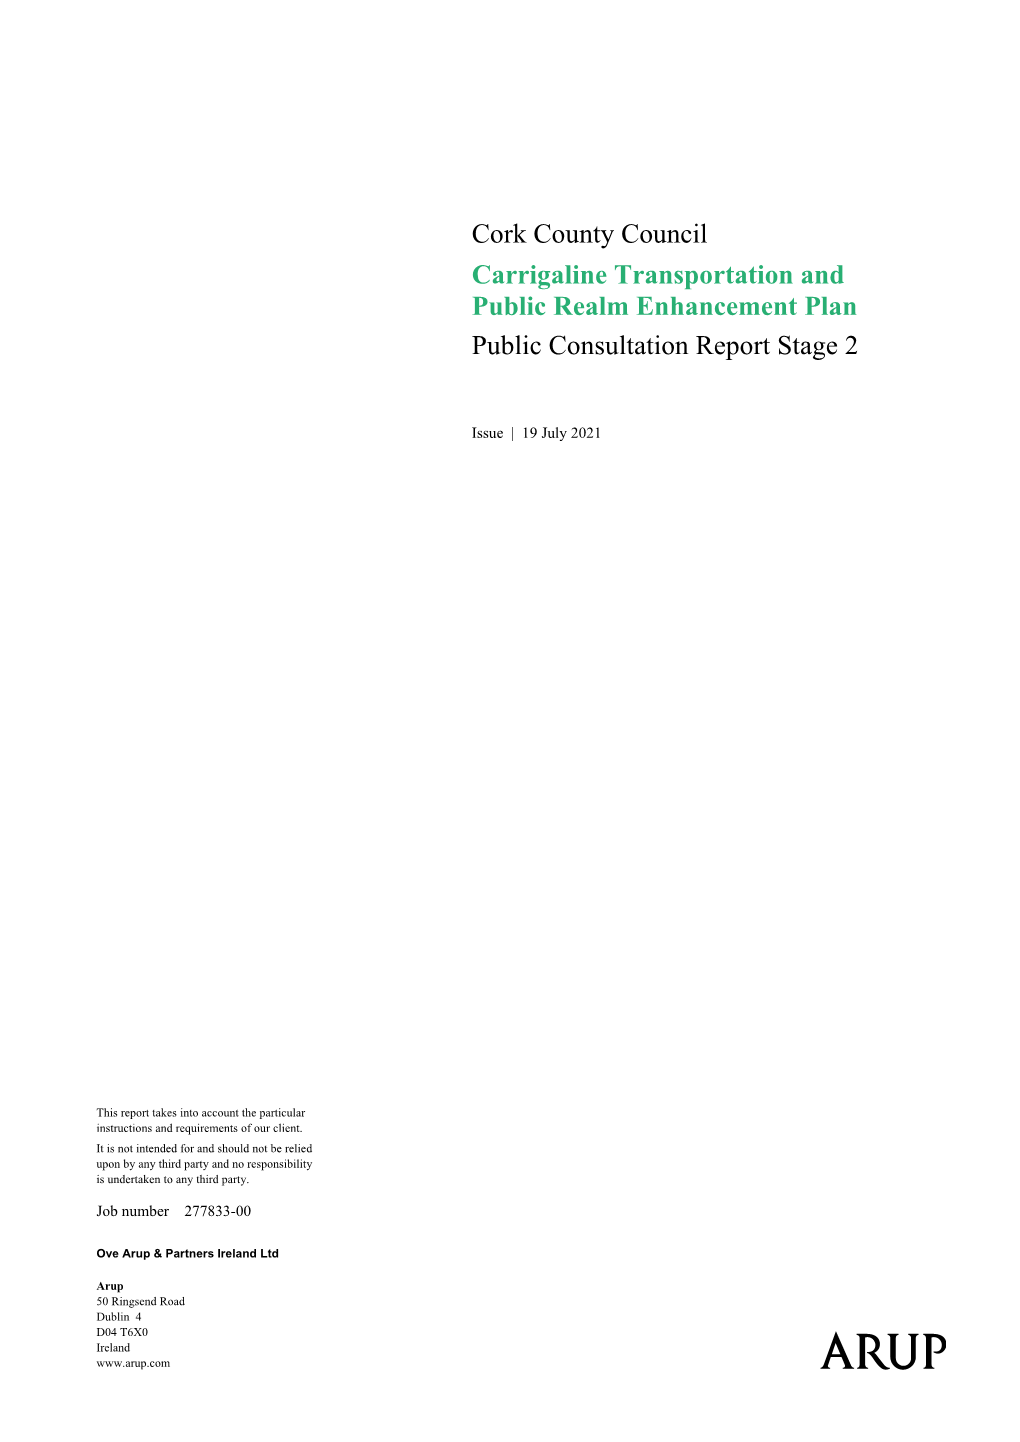 Carrigaline TPREP Public Consultation Report Stage 2